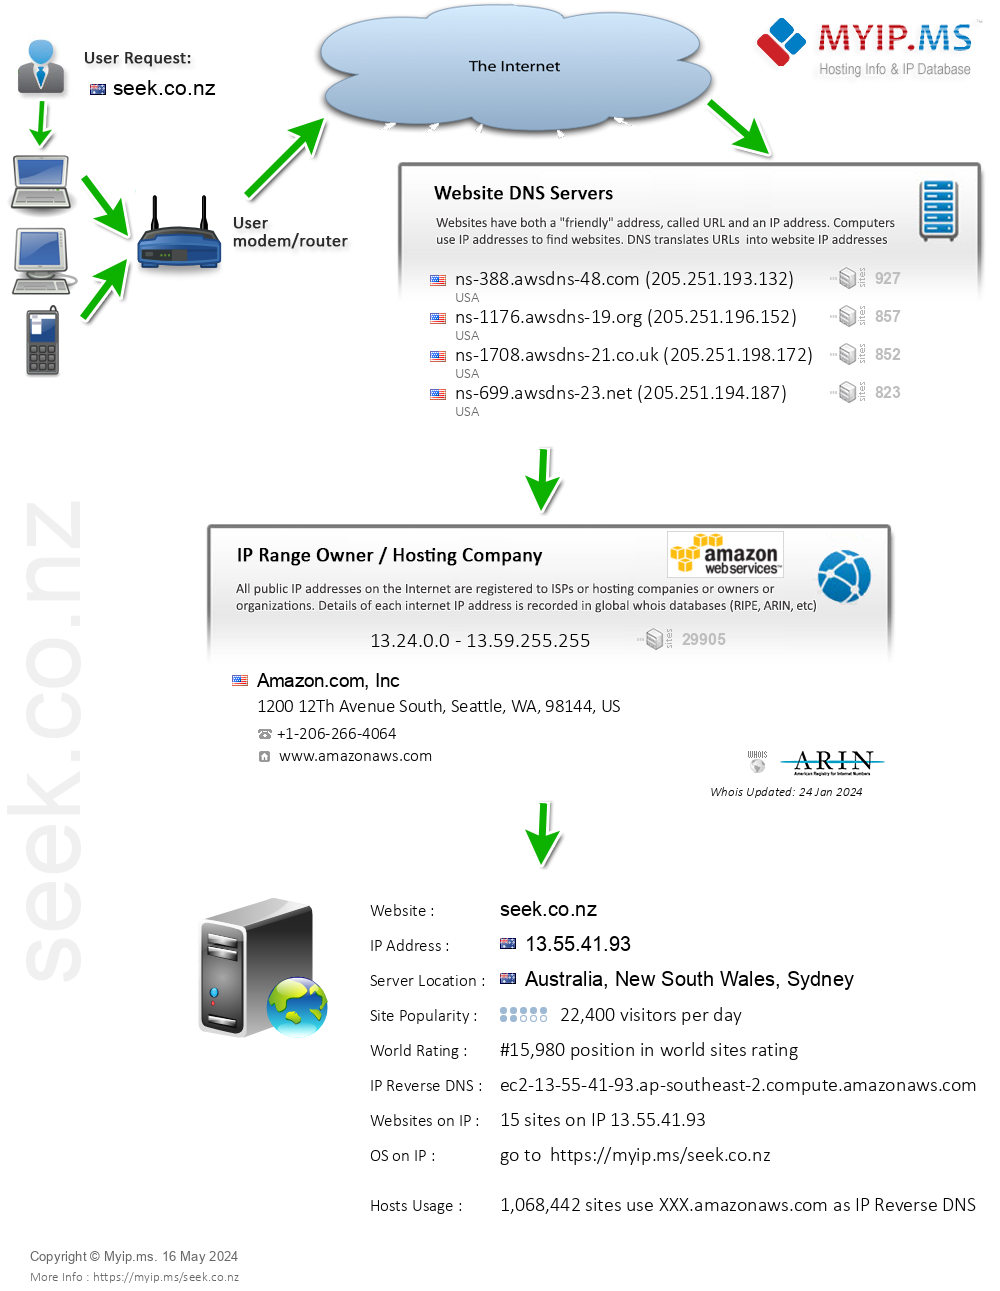 Seek.co.nz - Website Hosting Visual IP Diagram